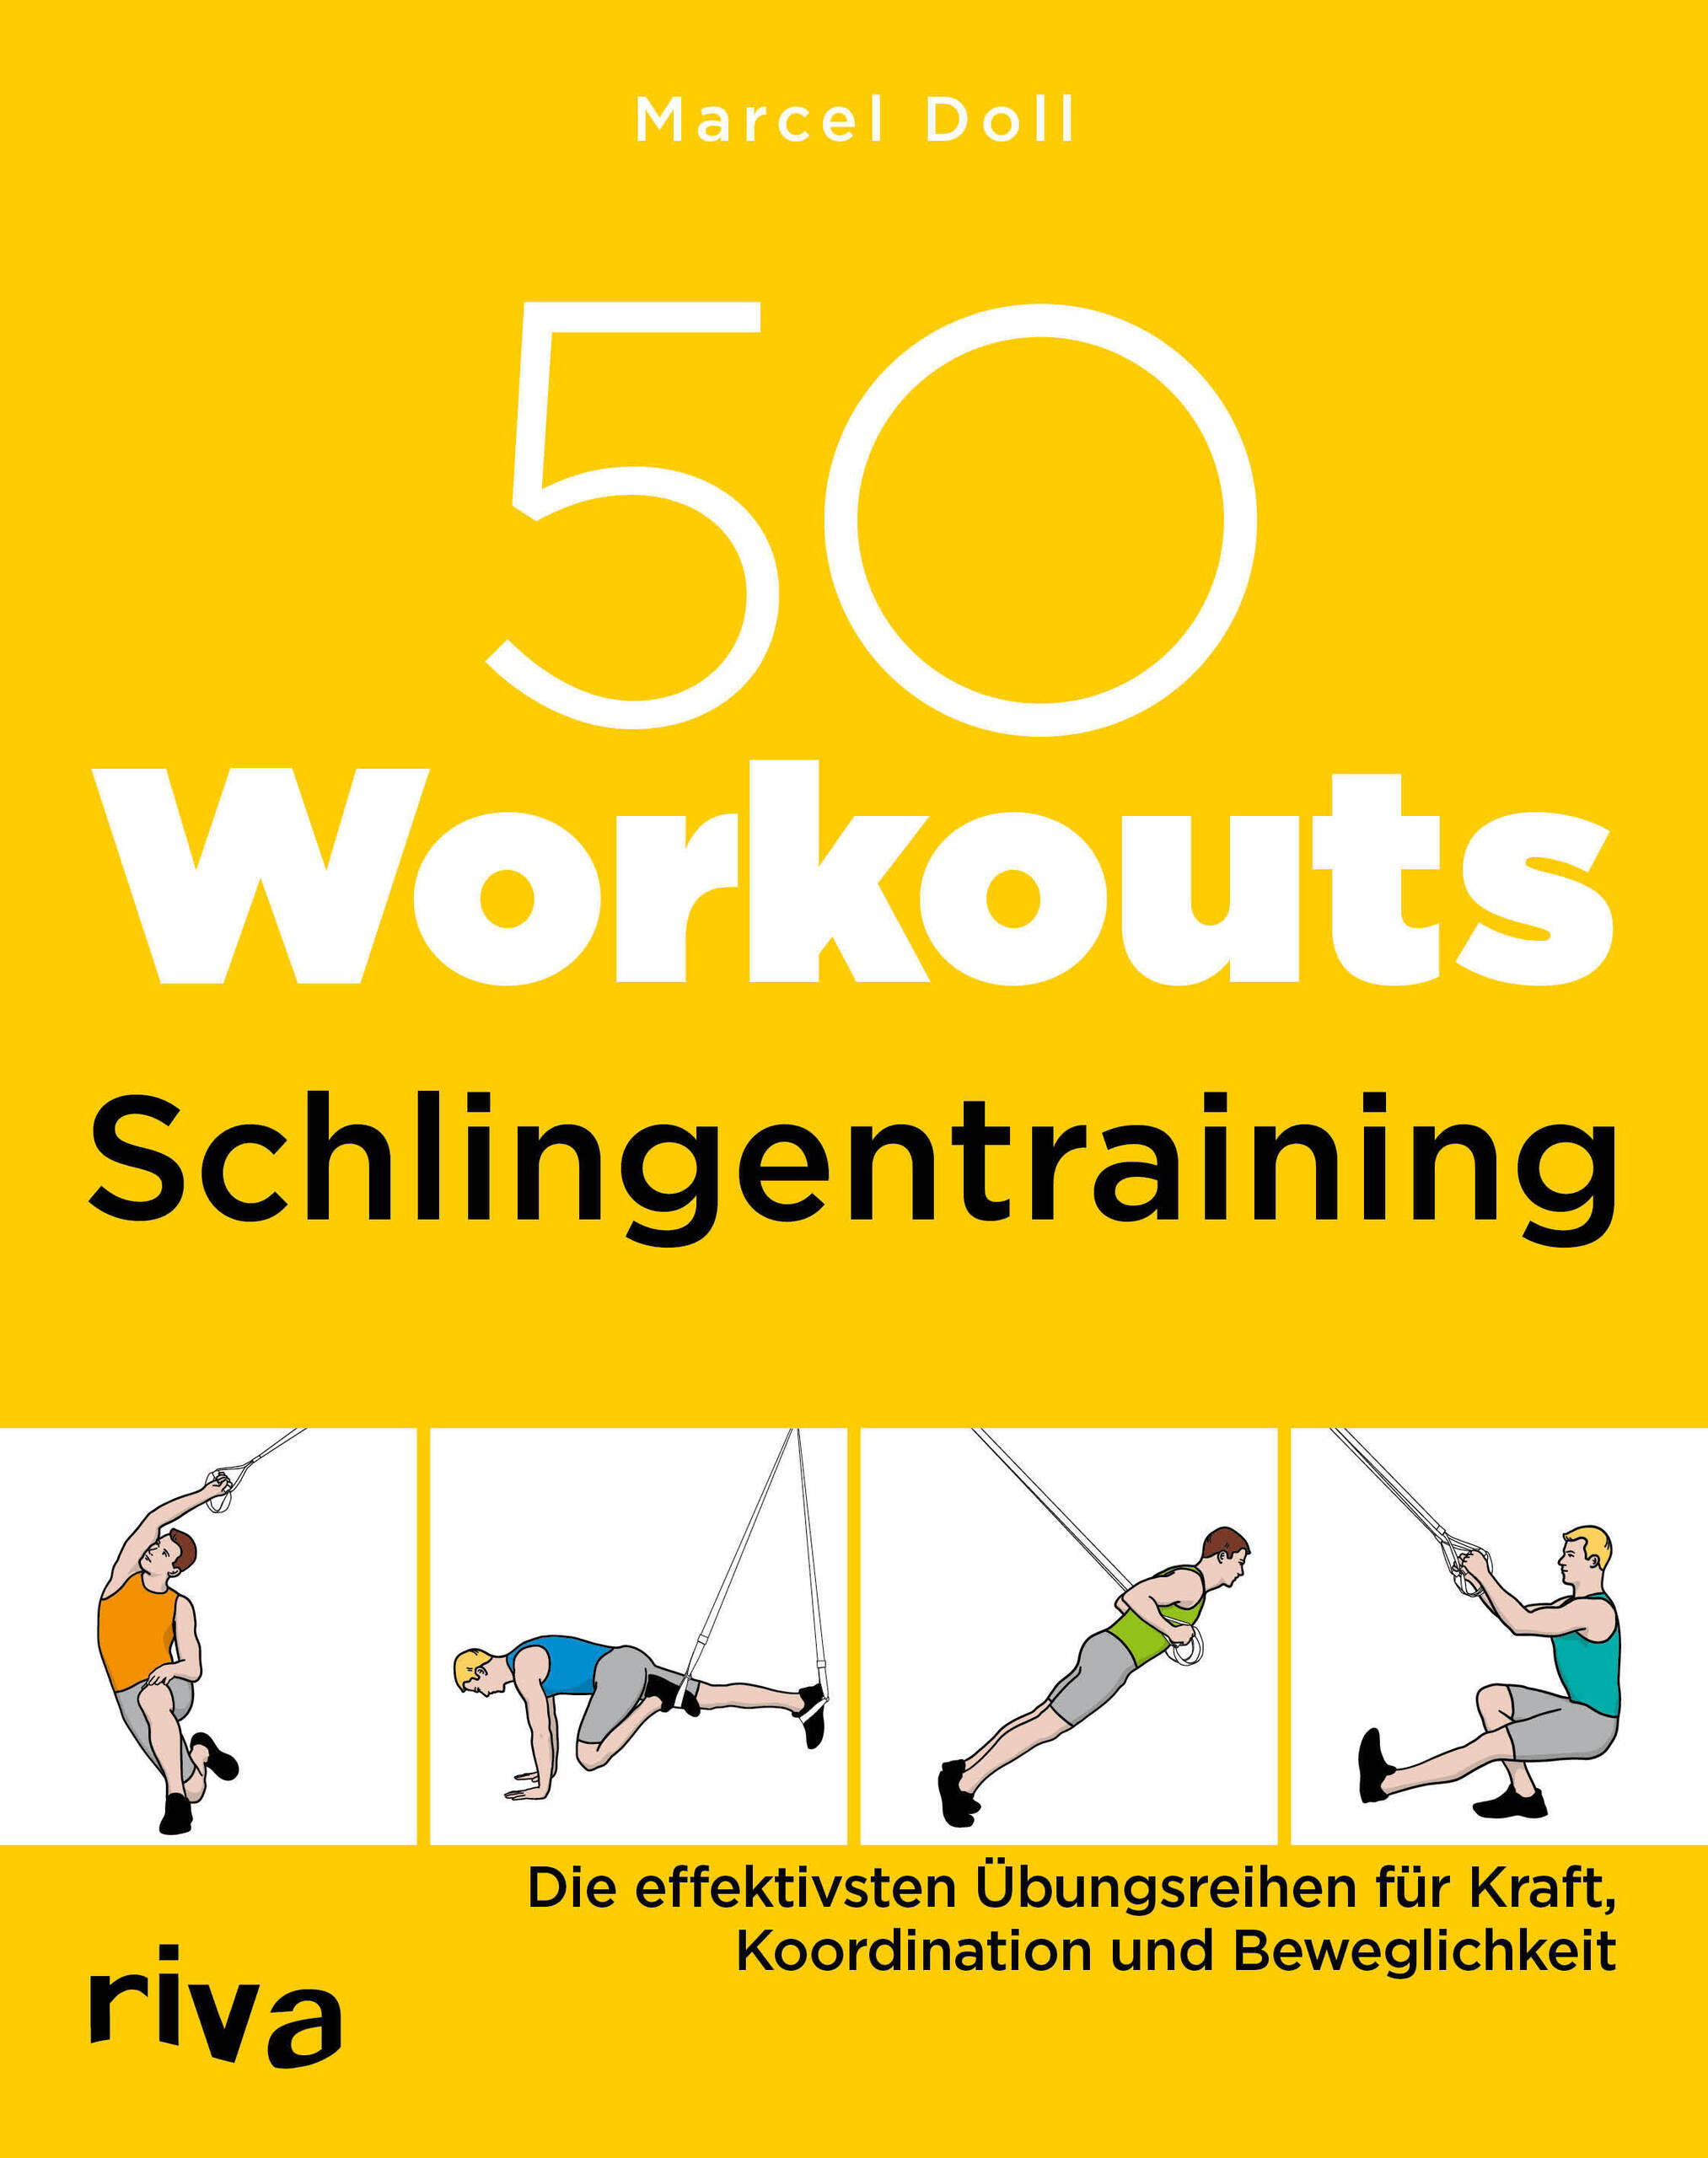 50 Workouts Schlingentraining: Die effektivsten Übungsreihen für Kraft, Koordination und Beweglichkeit